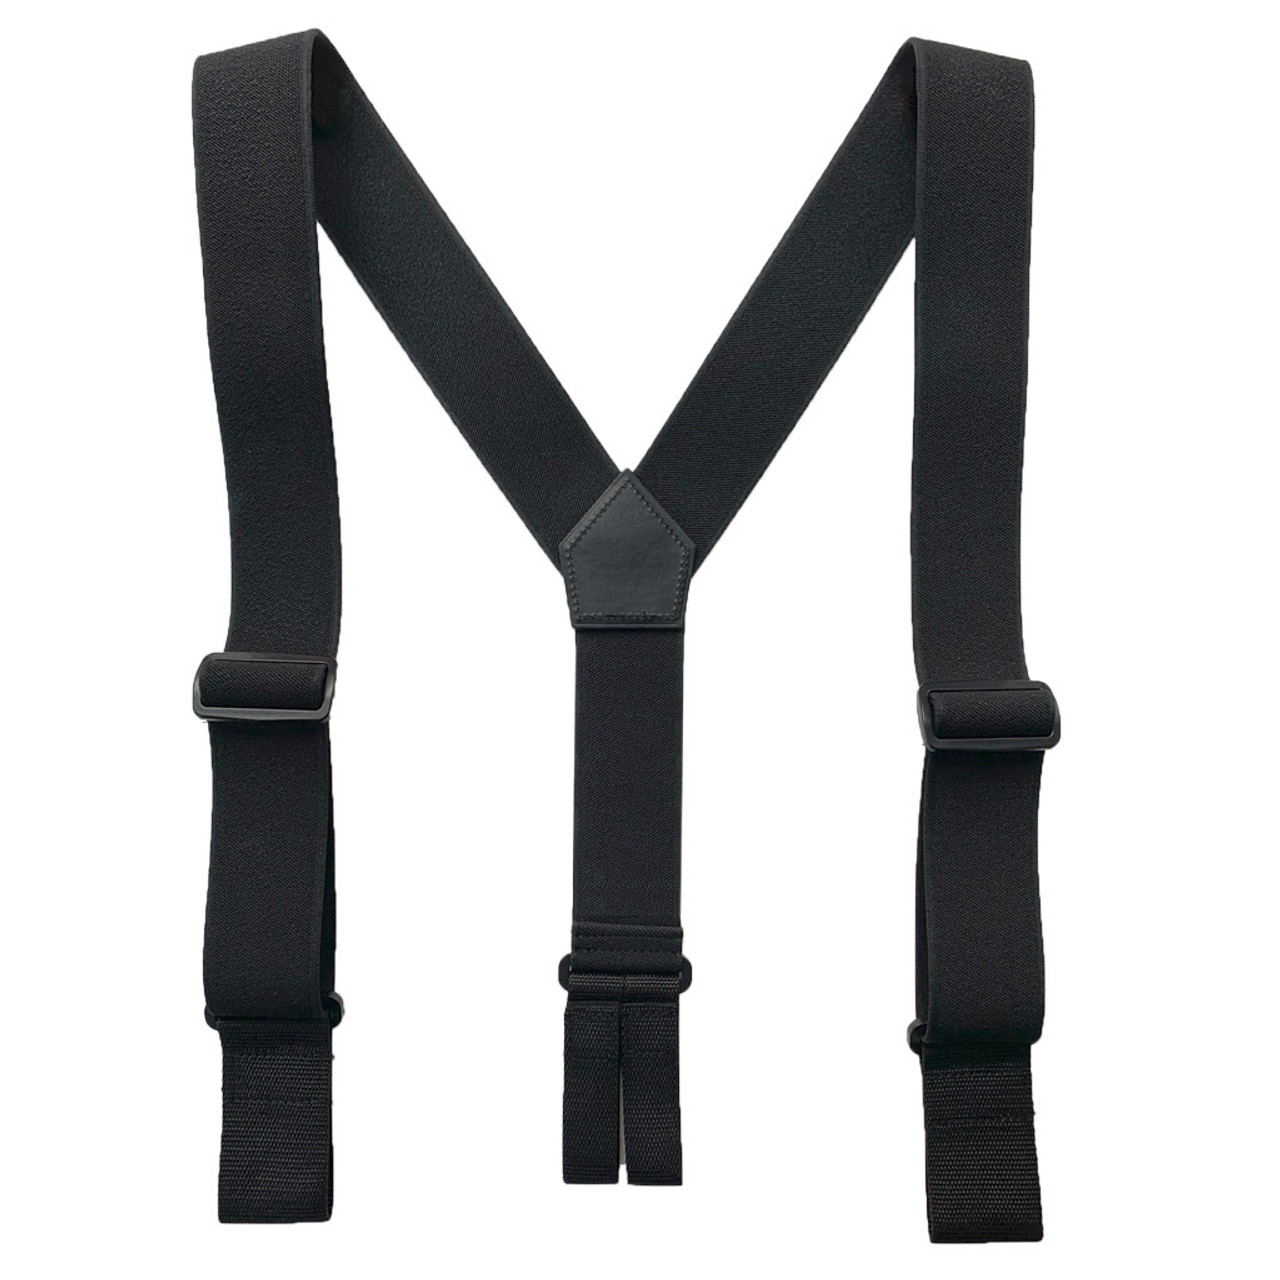 BLACK Tuff Stuff Industrial Belt Loop Suspenders